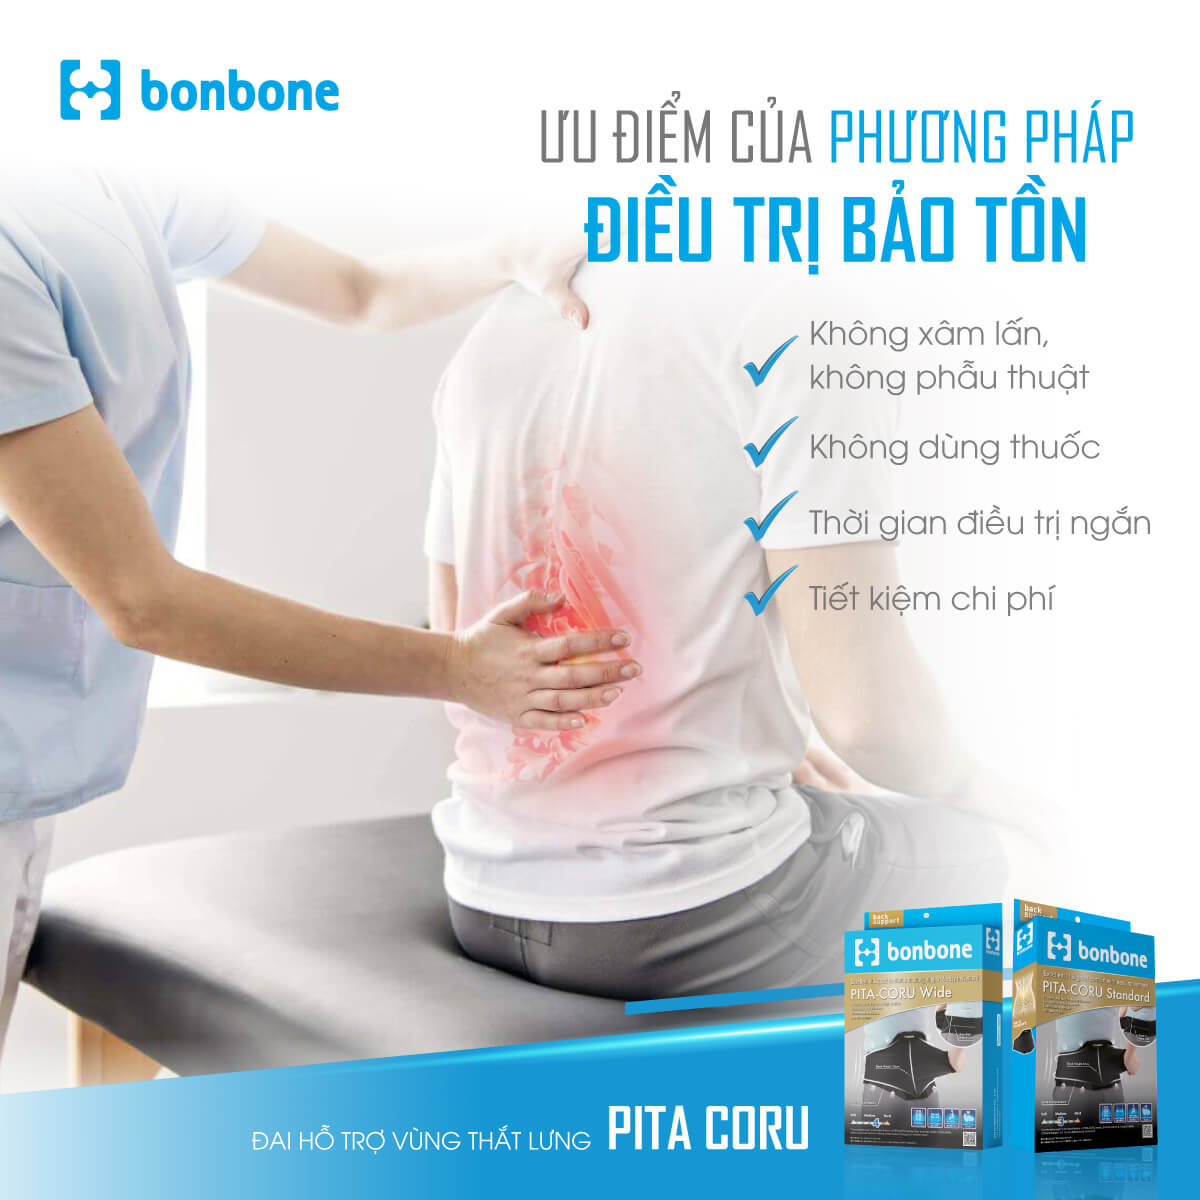 sử dụng đai lưng bonbone Pita Coro giúp hỗ trợ giảm đau lưng hiệu quả tại nhà